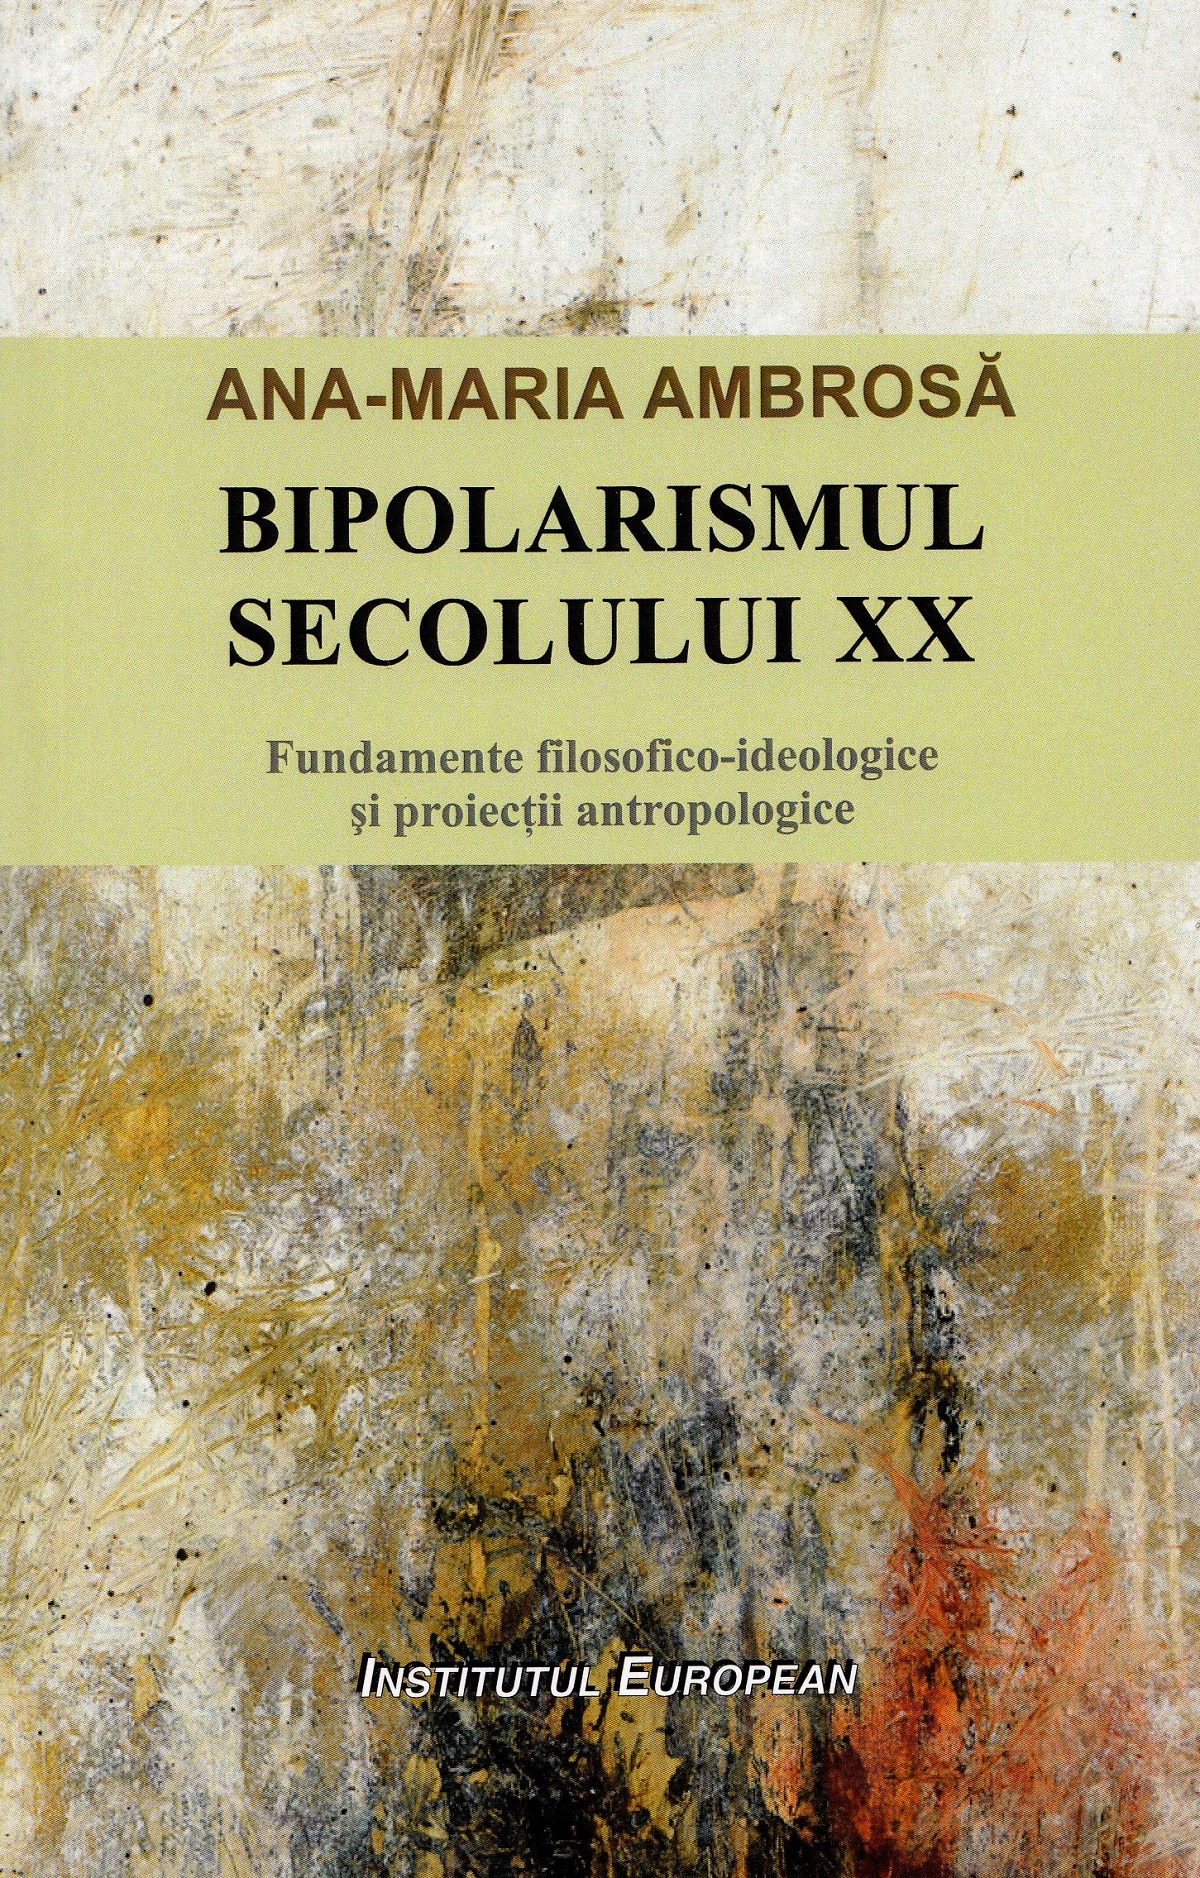 Bipolarismul secolului XX - Ana-Maria Ambrosa